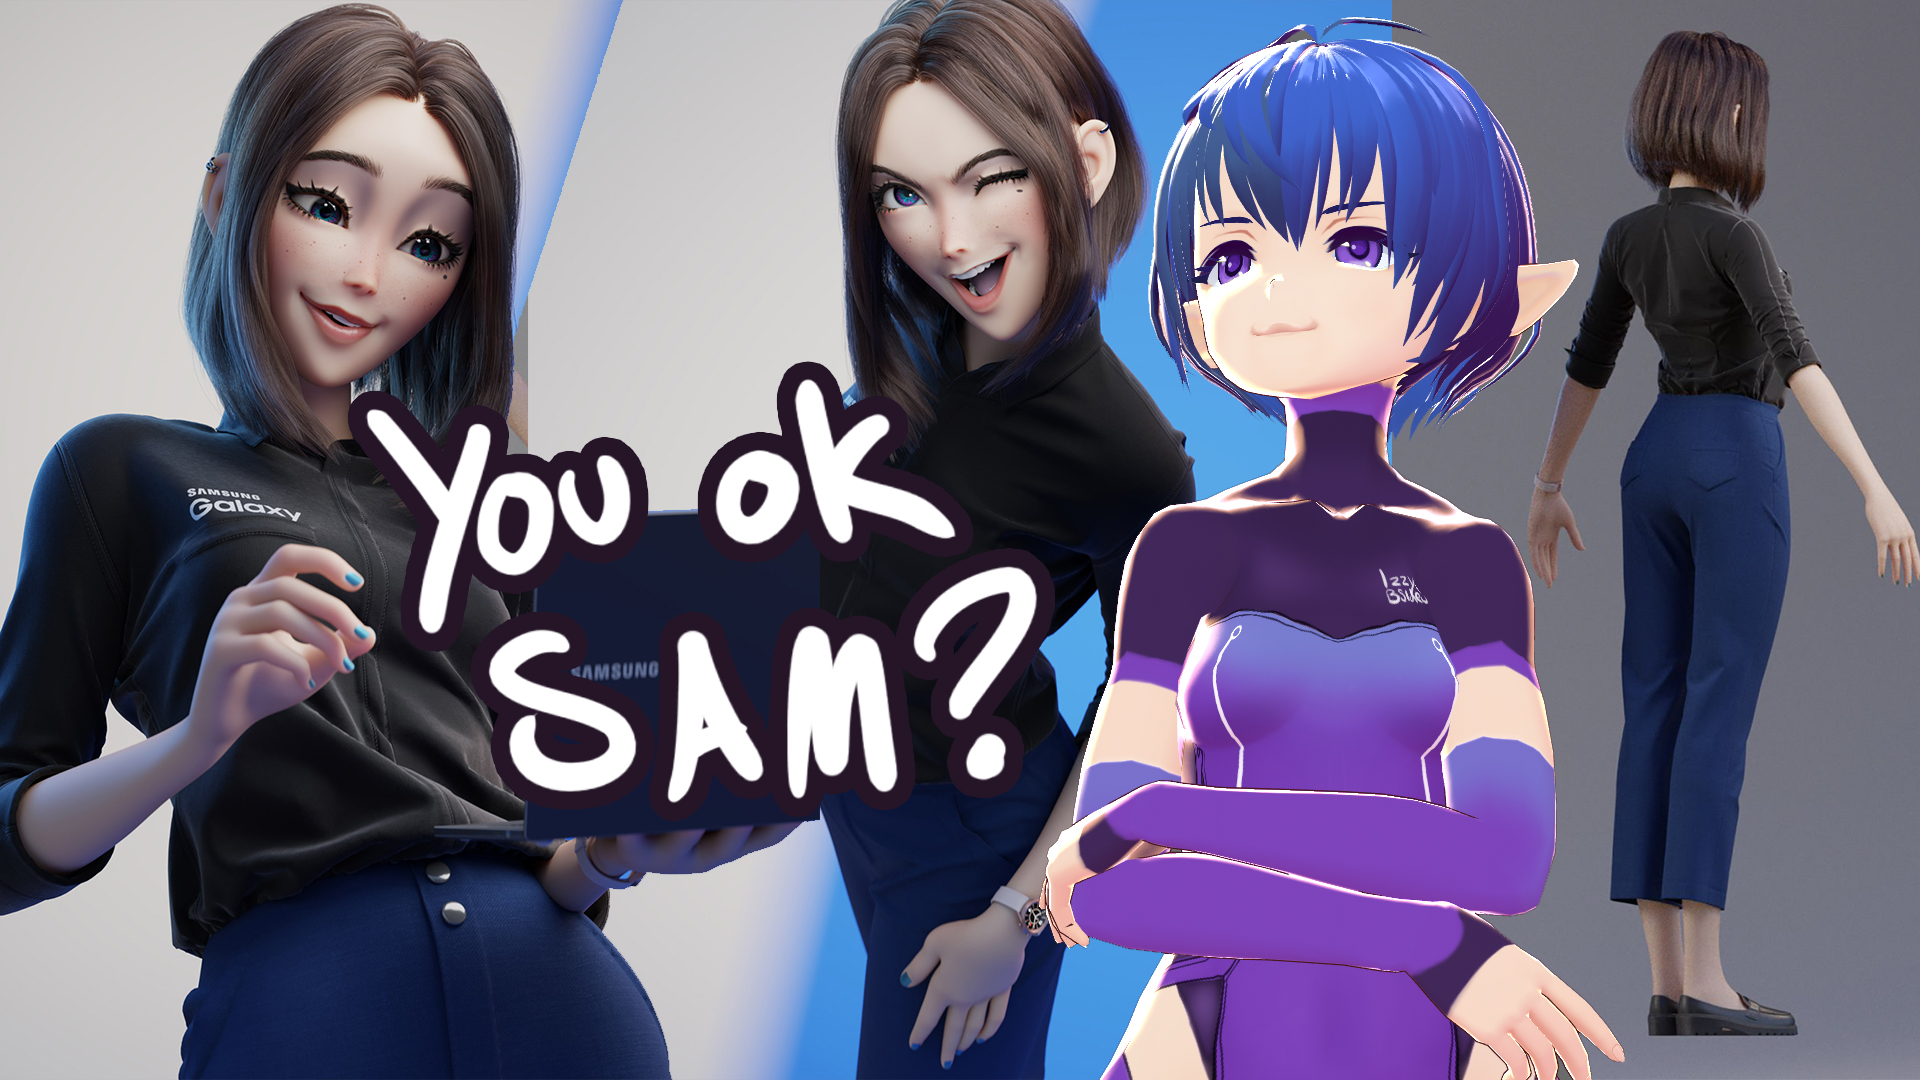 Samsung assistant girl Sam